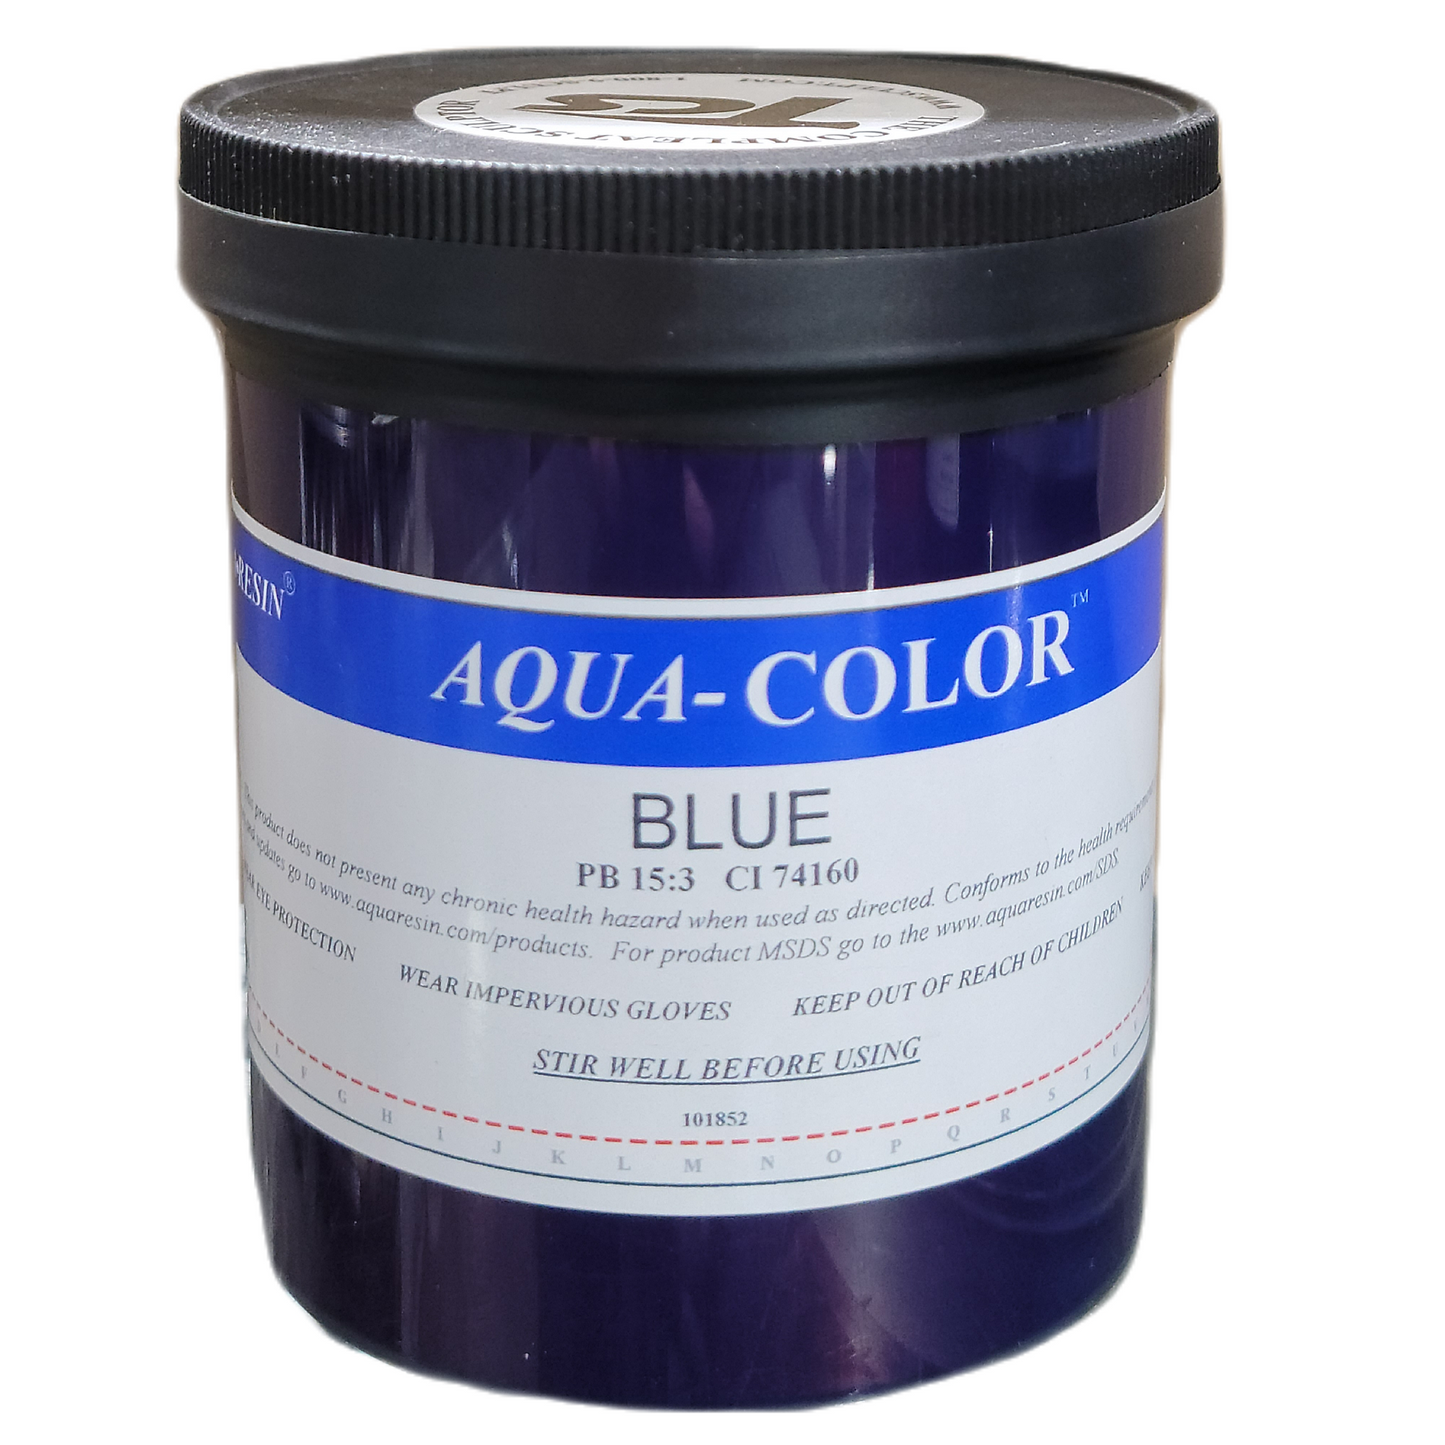 Aqua-Colors